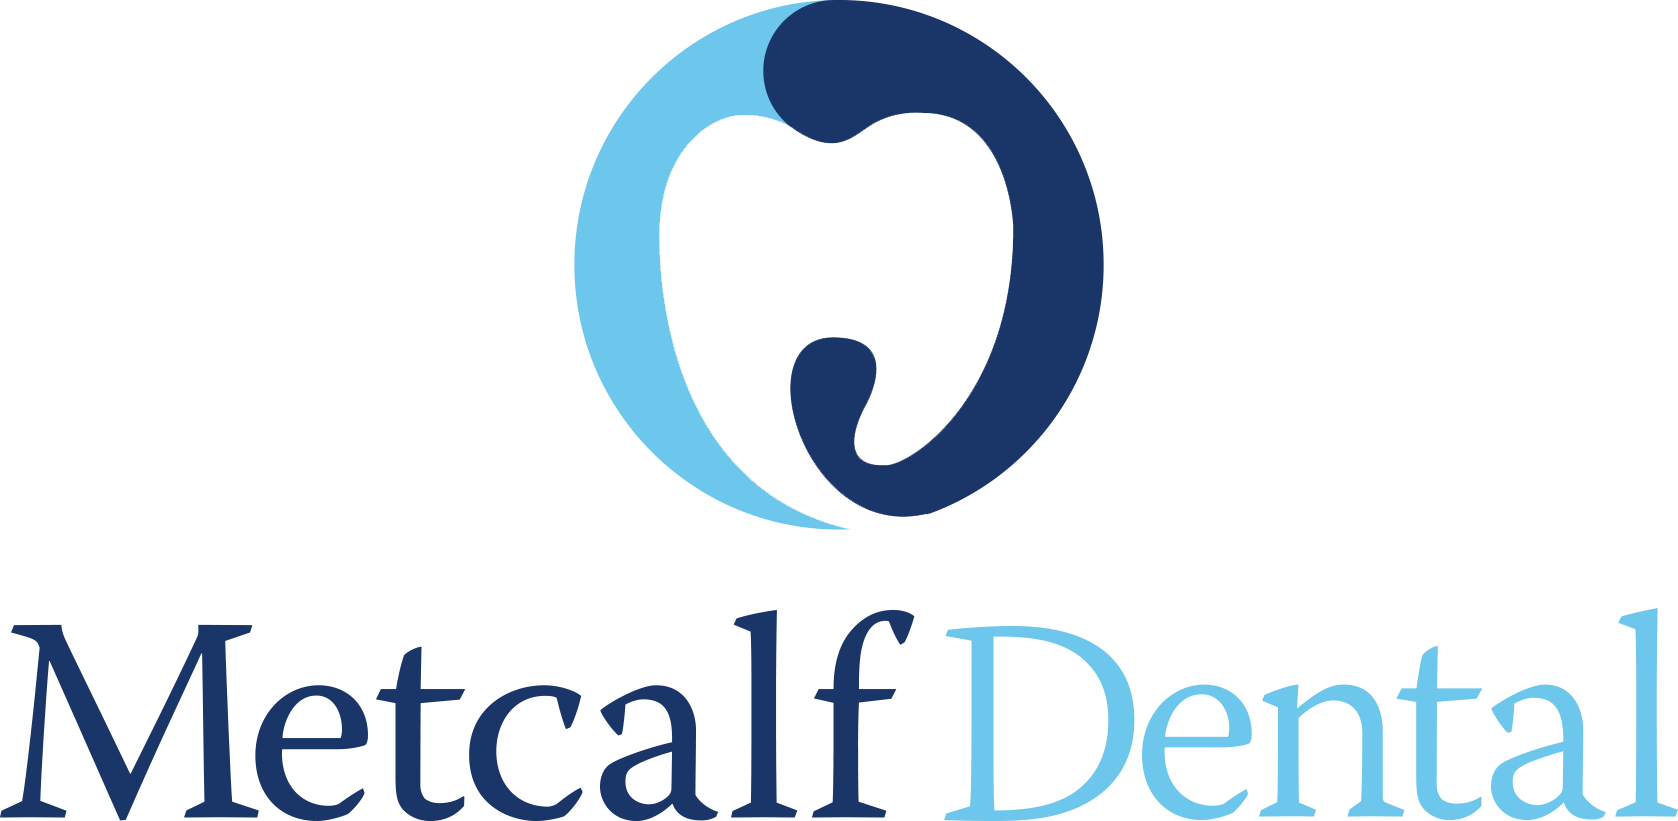 Visit Metcalf Dental